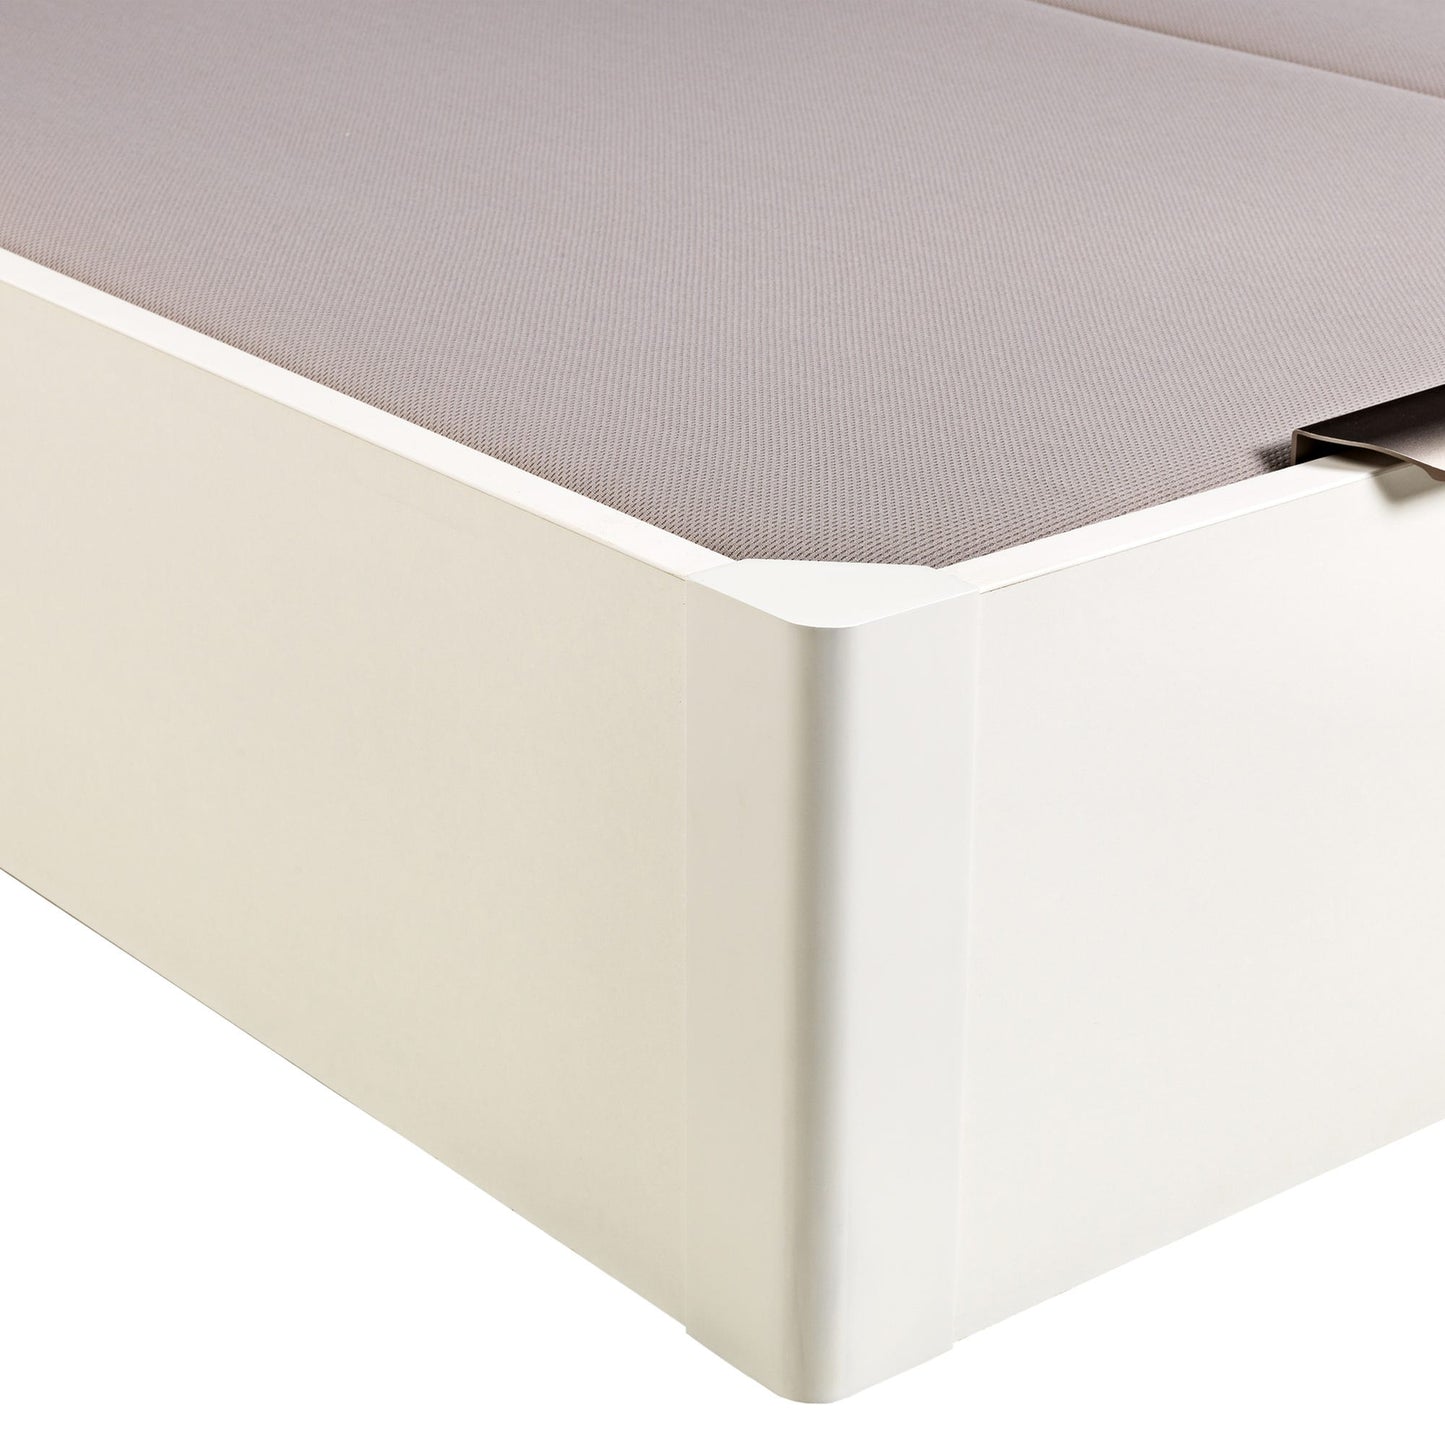 Canapé abatible de madera de tapa doble de color blanco - DESIGN - 150x220